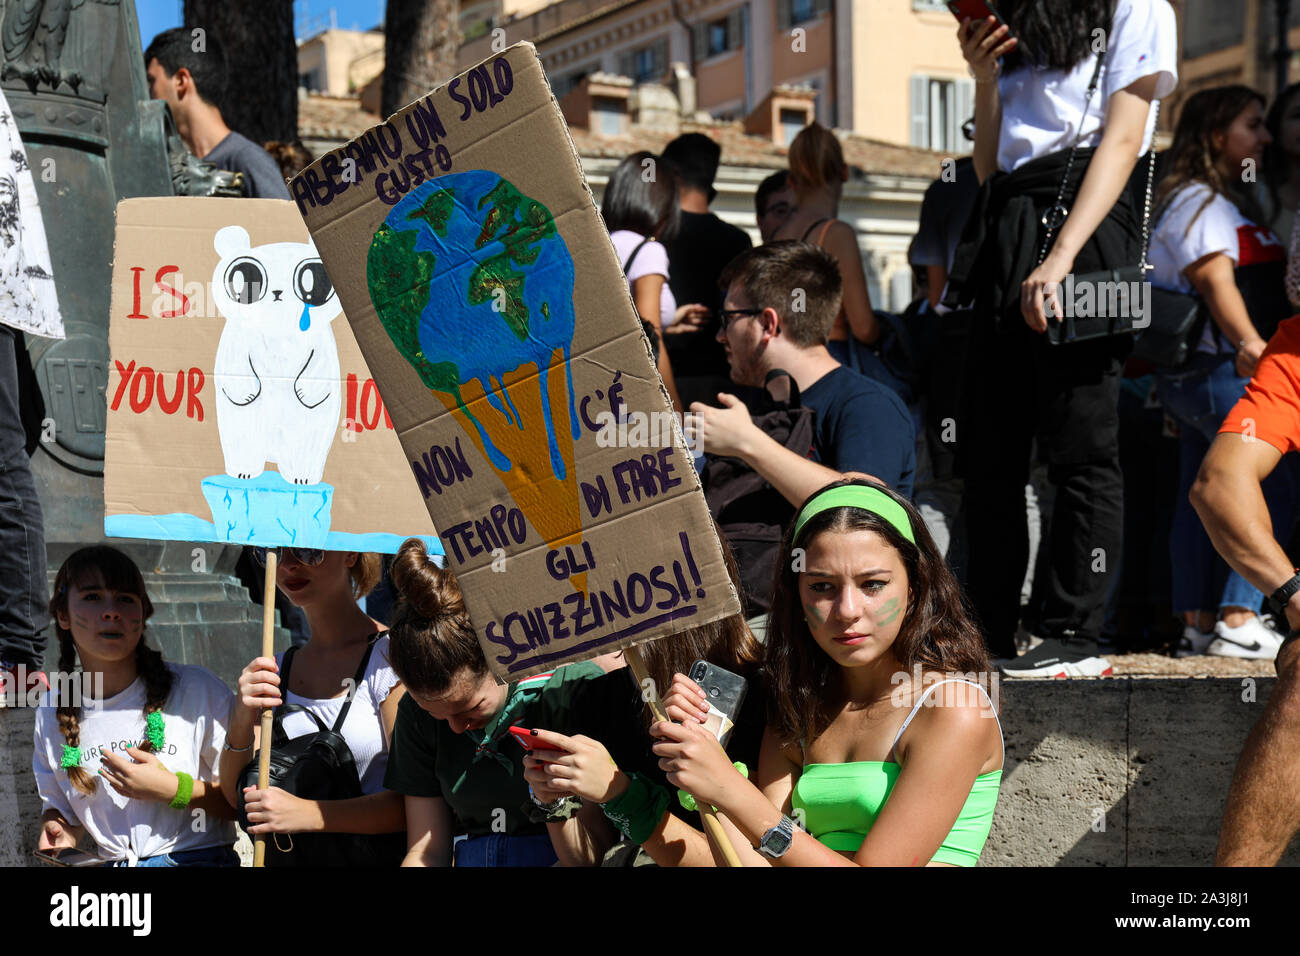 27/09/2019. Fridays for Future. School strike for climate at Piazza della Madonna di Loreto in Rome, Italy Stock Photo